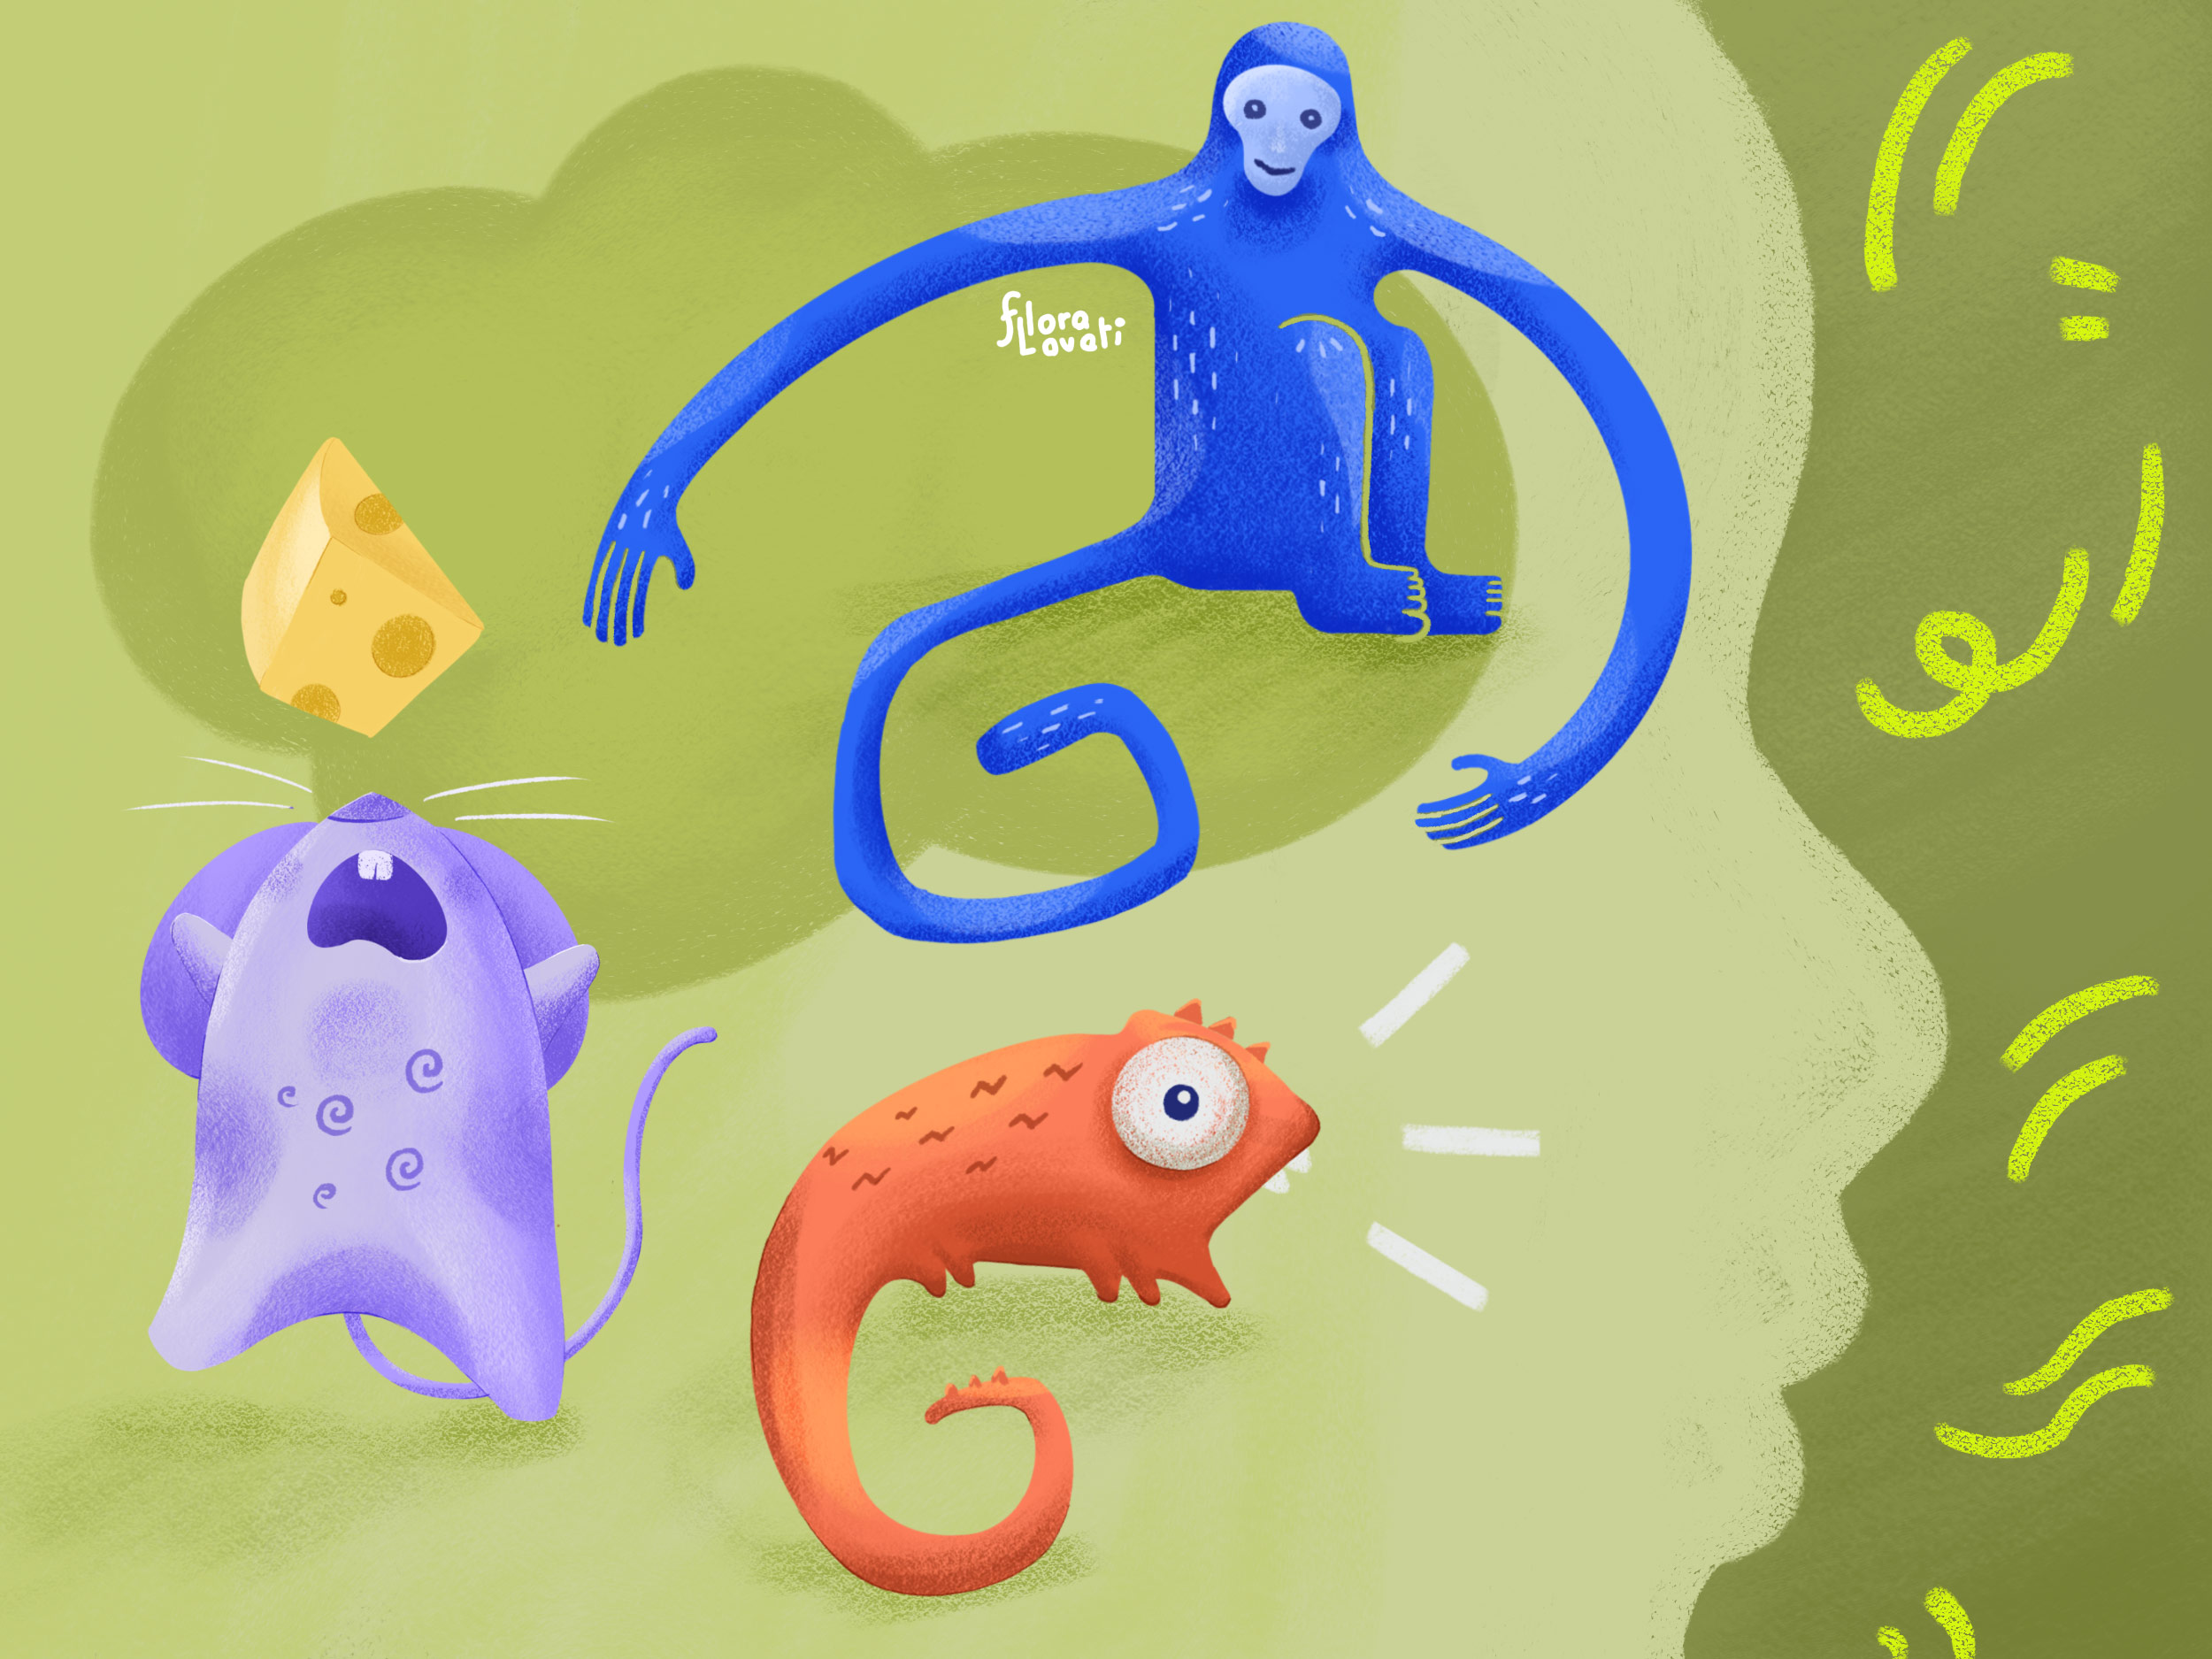 Illustrazione che rappresenta la descrizione di Rick Hanson: i tre animali nella nostra mente. La lucertola, il topo e la scimmia.